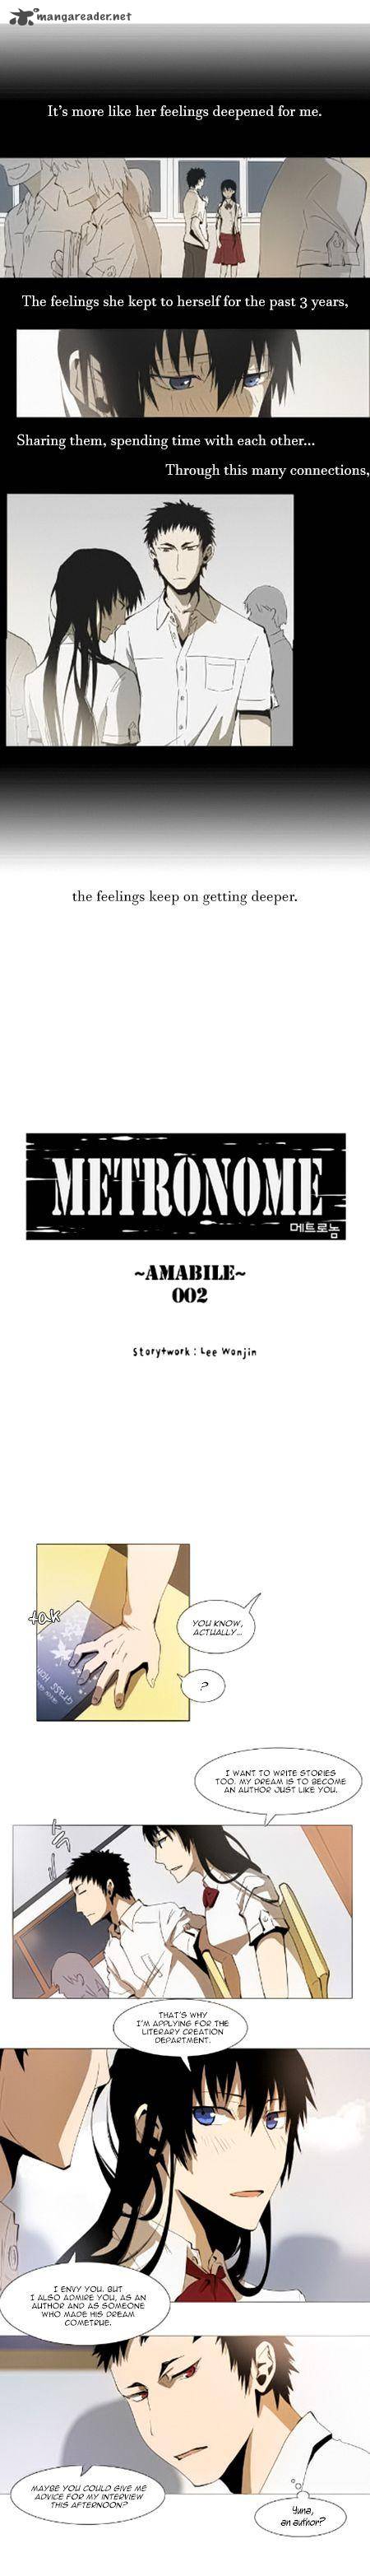 Metronome 33 4